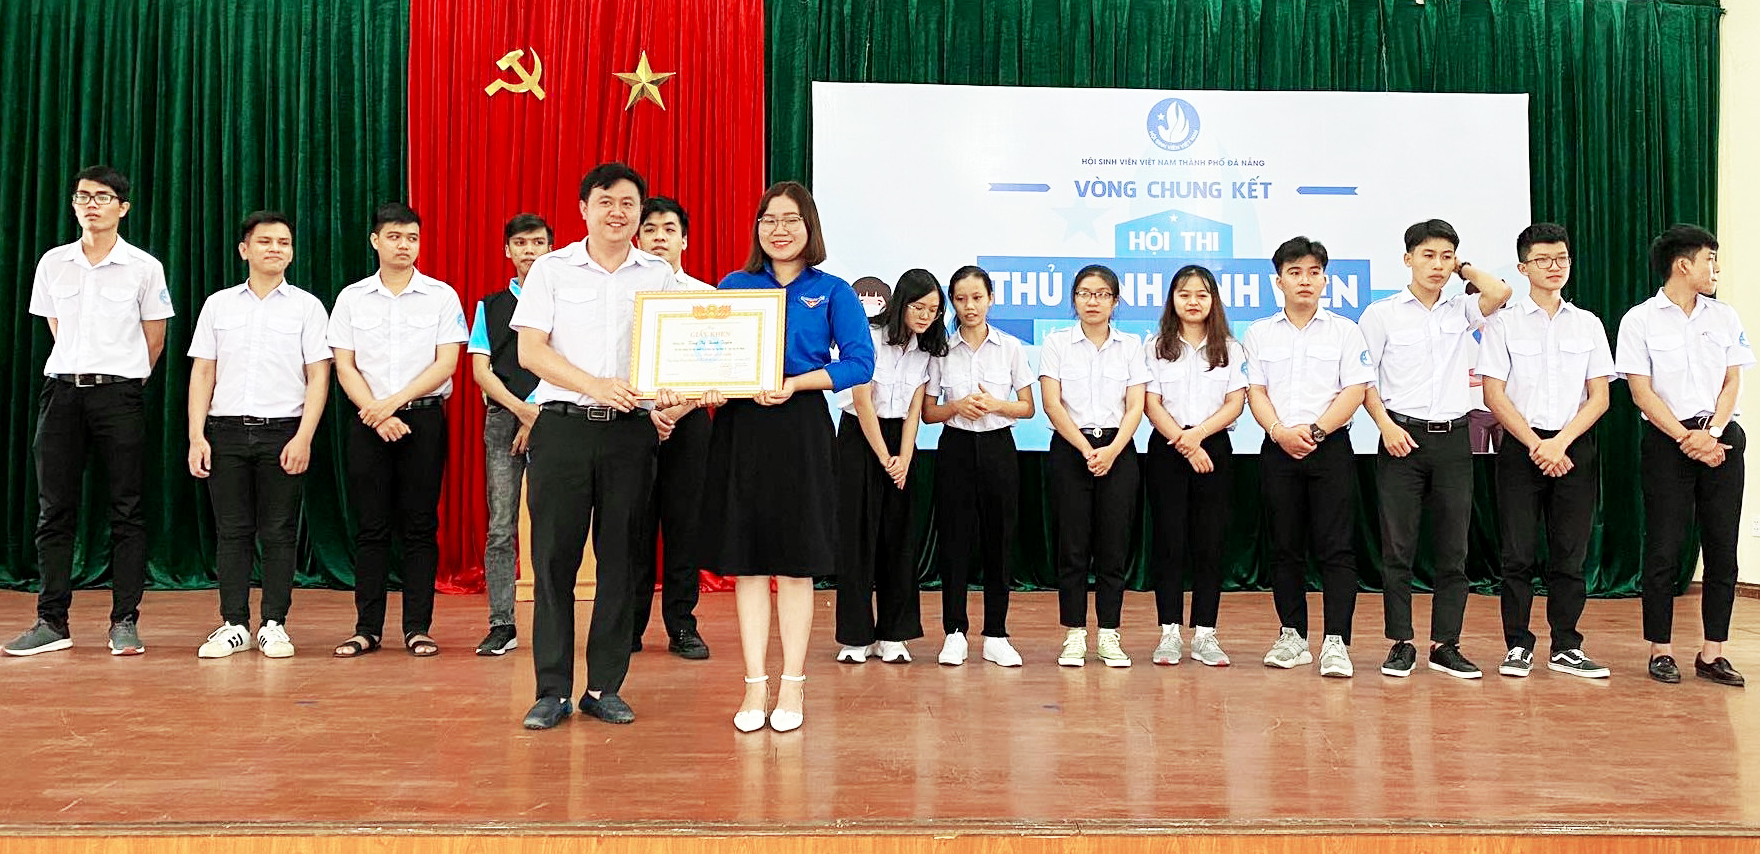 Anh Lê Công Hùng, Phó Chủ tịch Trung ương Hội Sinh viên Việt Nam, trao thưởng cho sinh viên Tống Thị Thanh Tuyền. Ảnh: XUÂN ĐÔNG